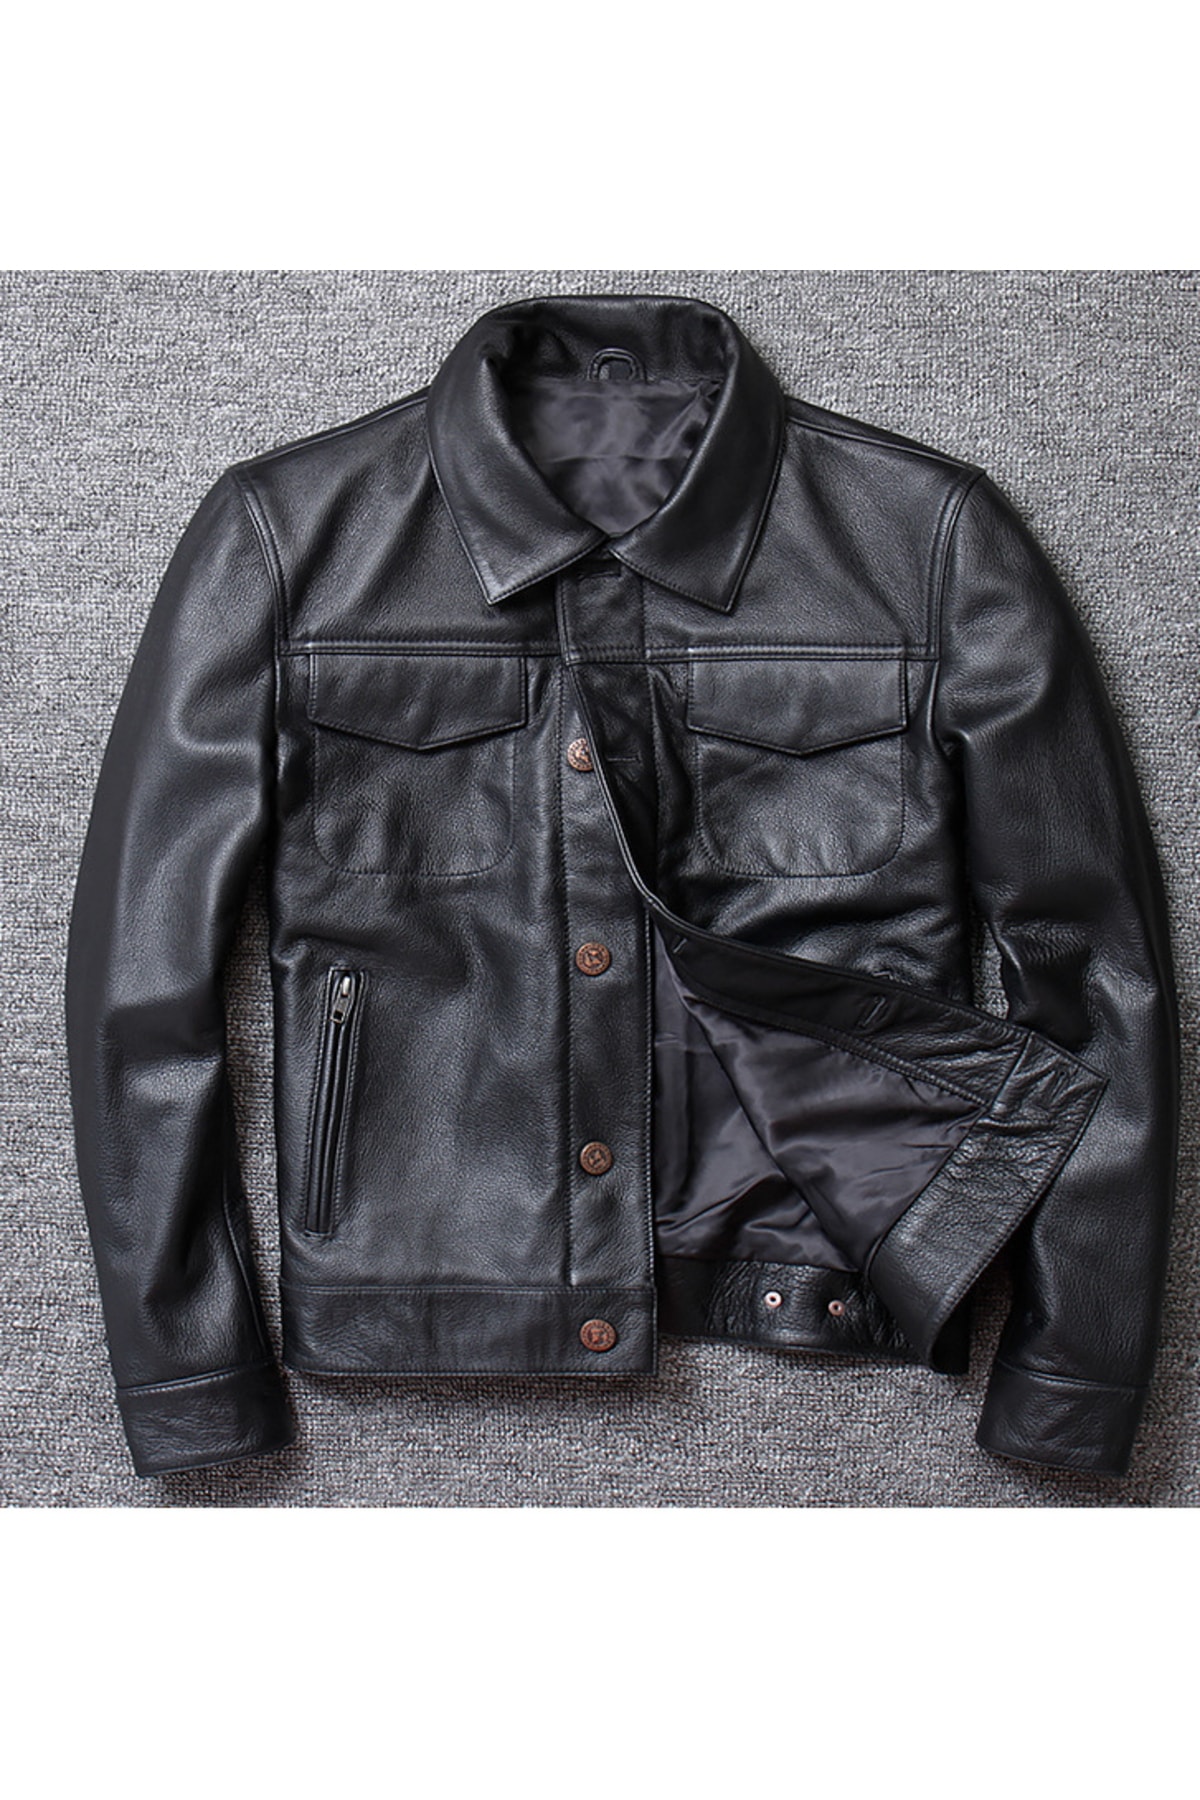 DESARO Hakiki Erkek Deri Siyah Lewis Model Mont/ceket